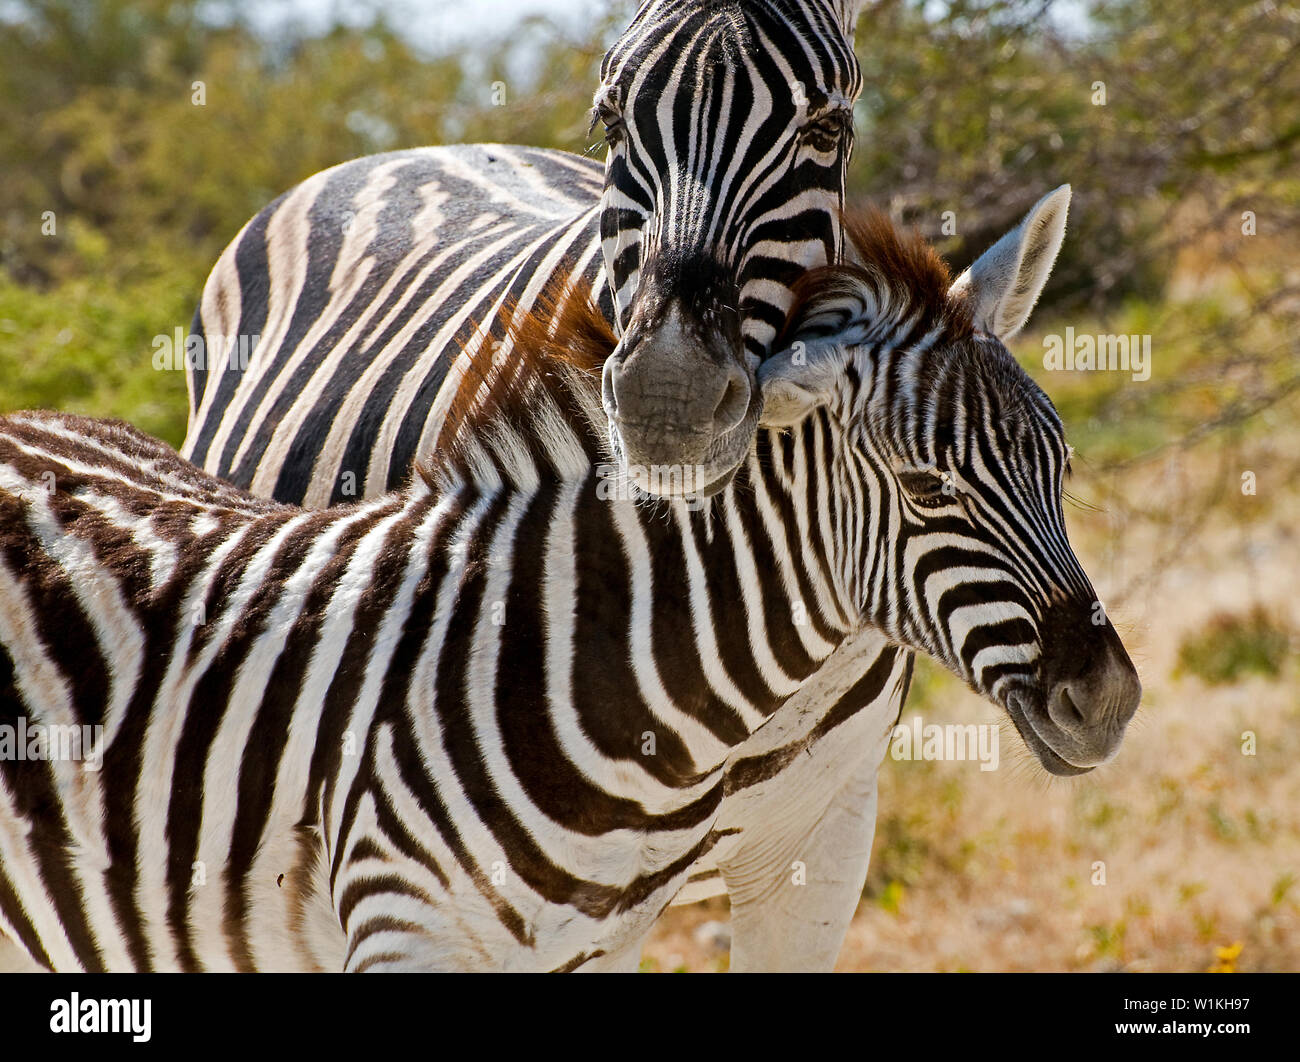 A mother zebra protects her baby near the Etosha Pan west of Namutoni in Namibia's Etosha National Park. (c) 2008 Tom Kelly Stock Photo